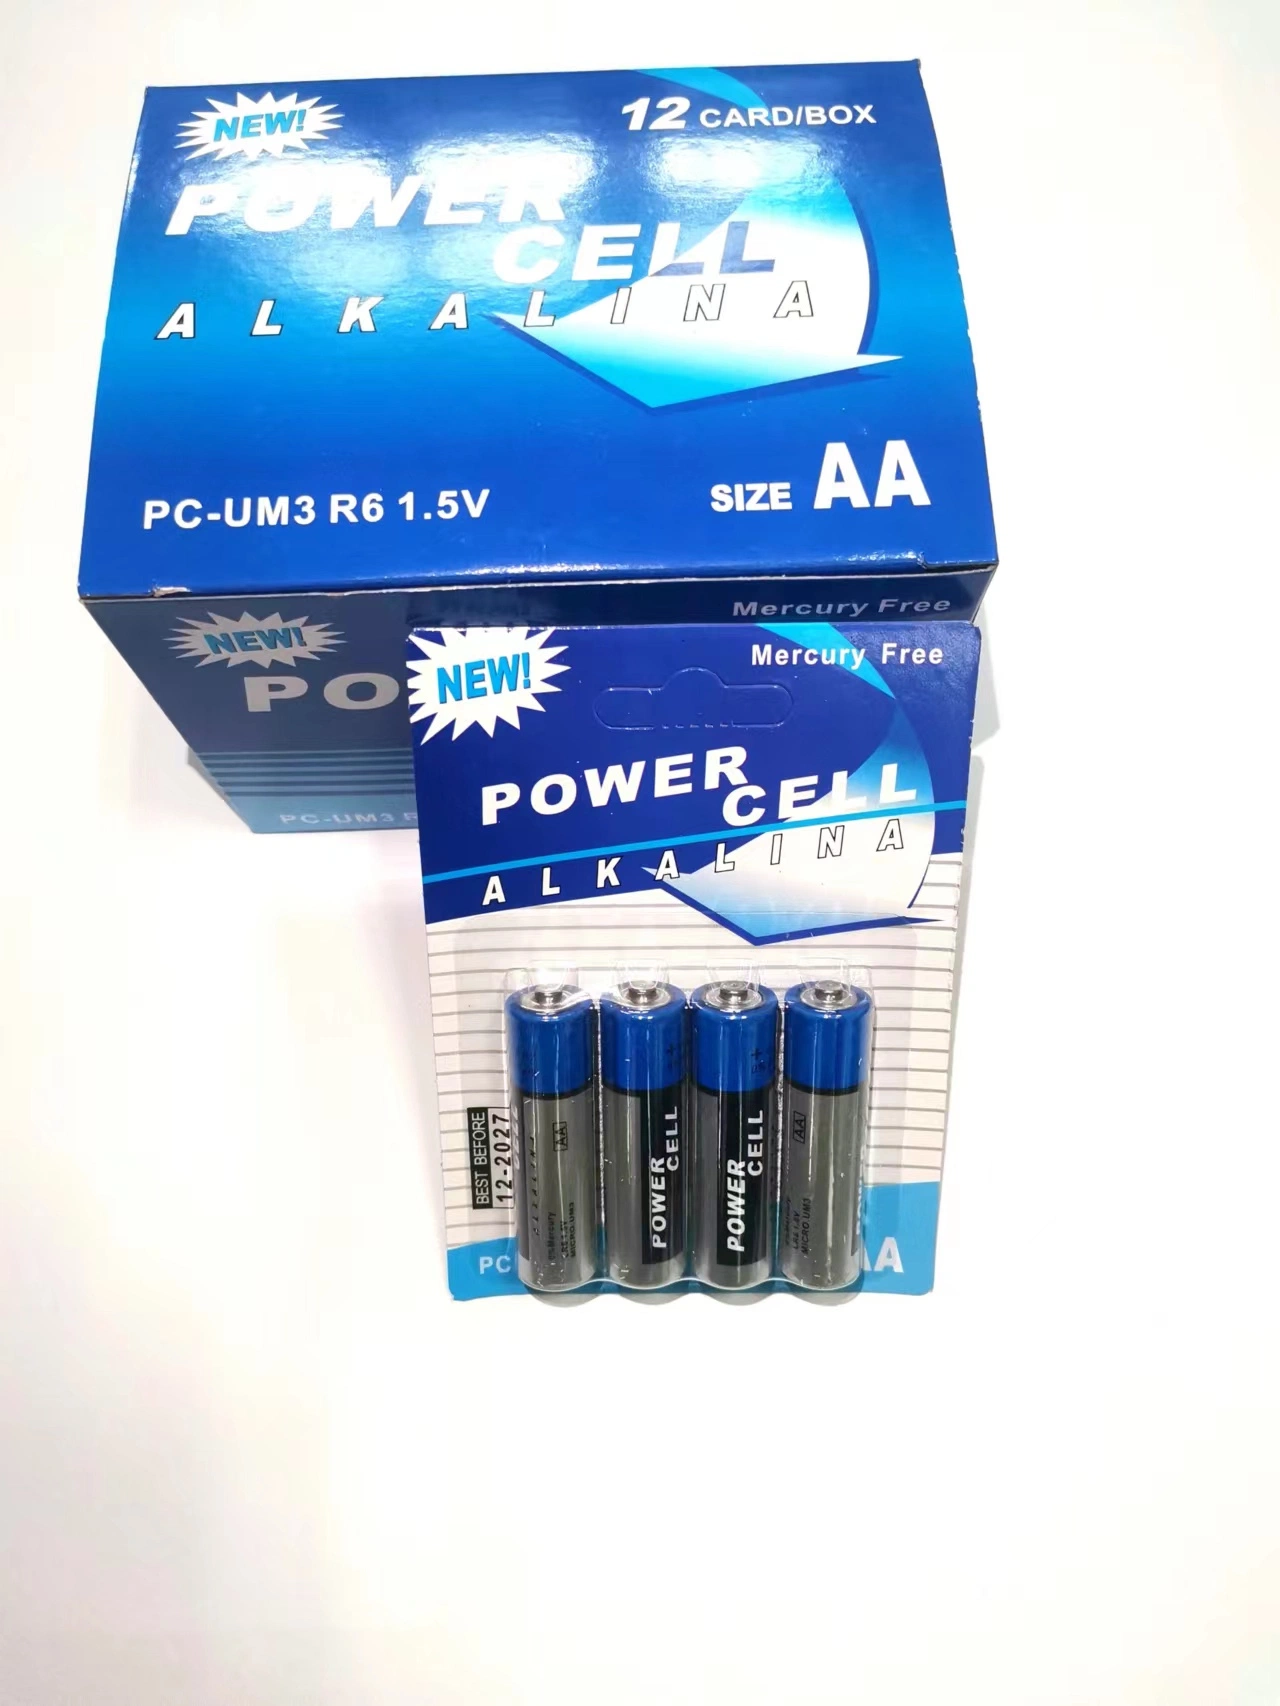 Батарея из углеродного цинка AAA R03 UM-4 1,5 в Powercell, 4 ШТ. Упаковка блистерных карт сухой батарейный отсек для бытовой электроники/ Дистанционное управление/Бытовая электроника